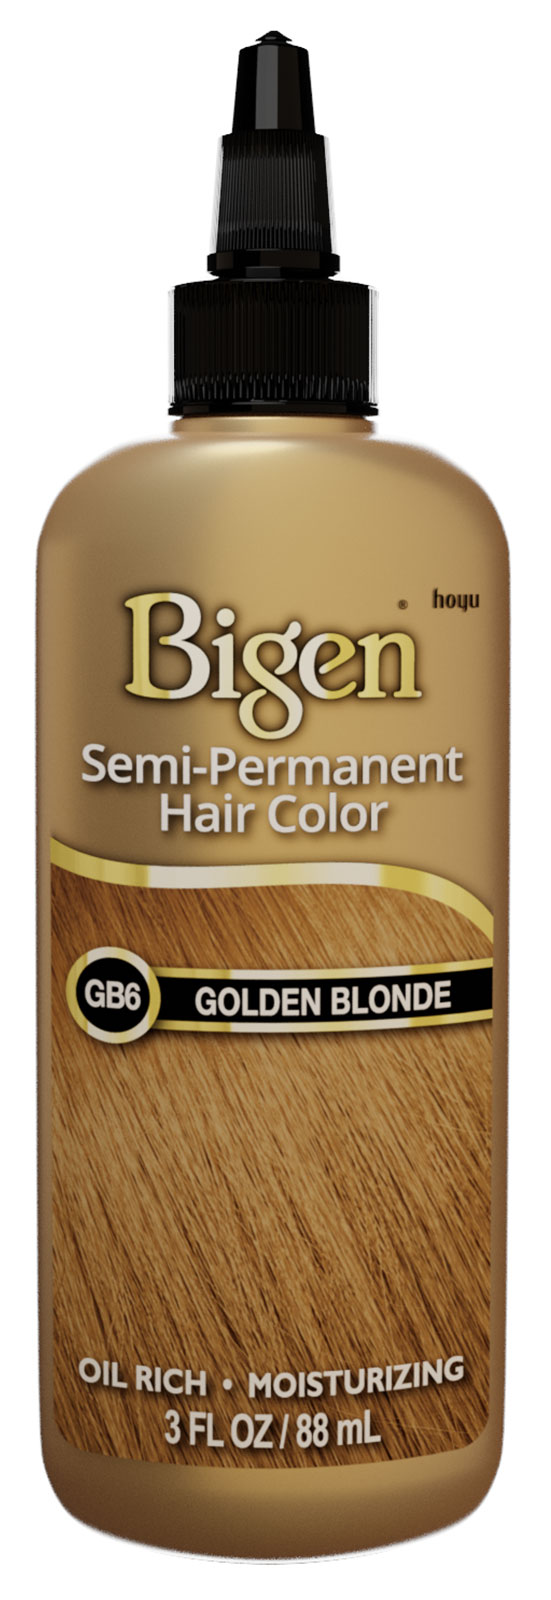 GB6-Golden Blonde